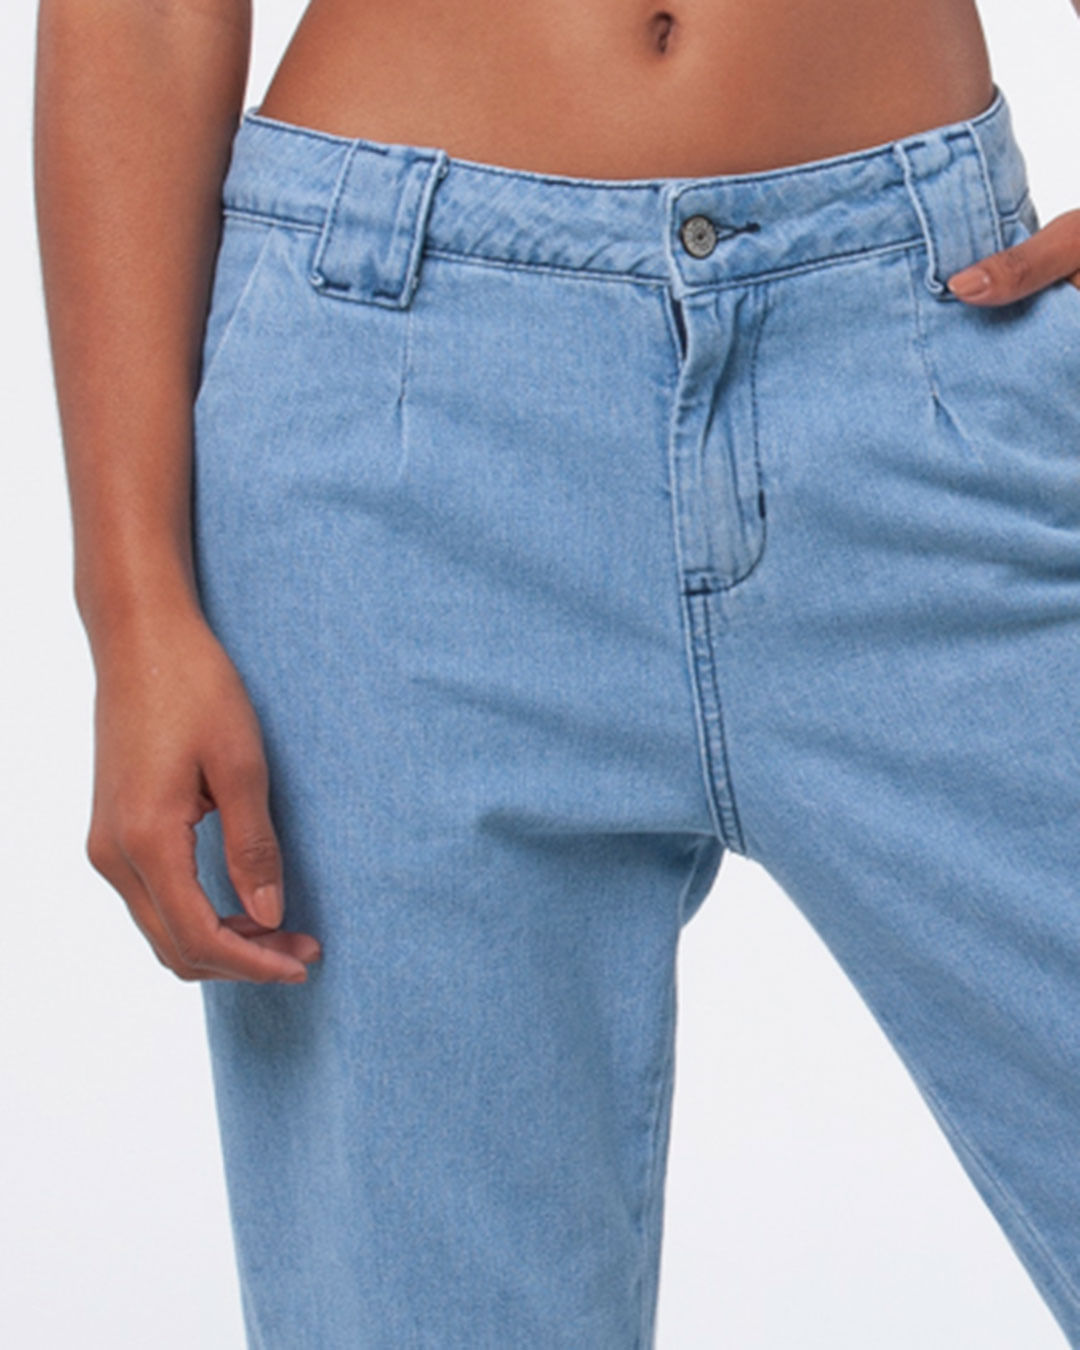 Calca-Jeans-Feminina-Jogger-Cintura-Baixa-Azul-Claro